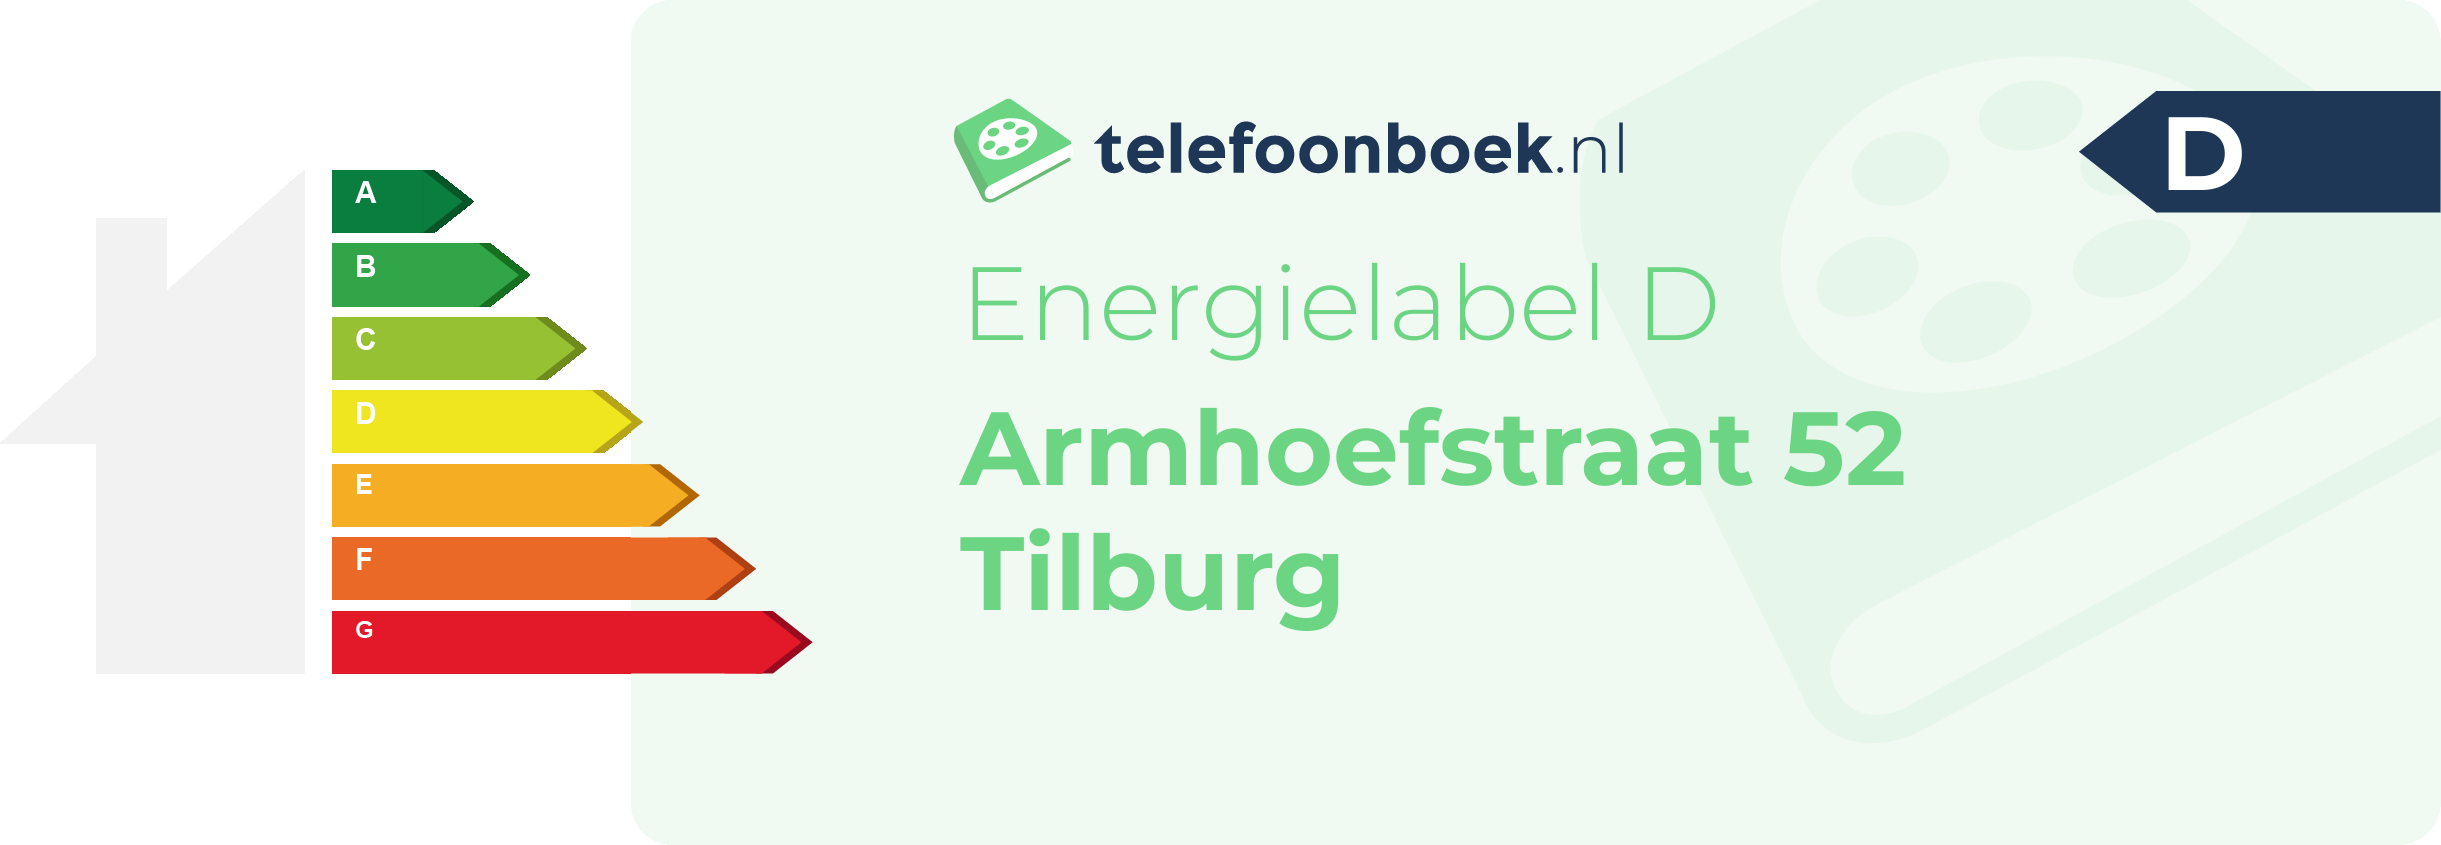 Energielabel Armhoefstraat 52 Tilburg